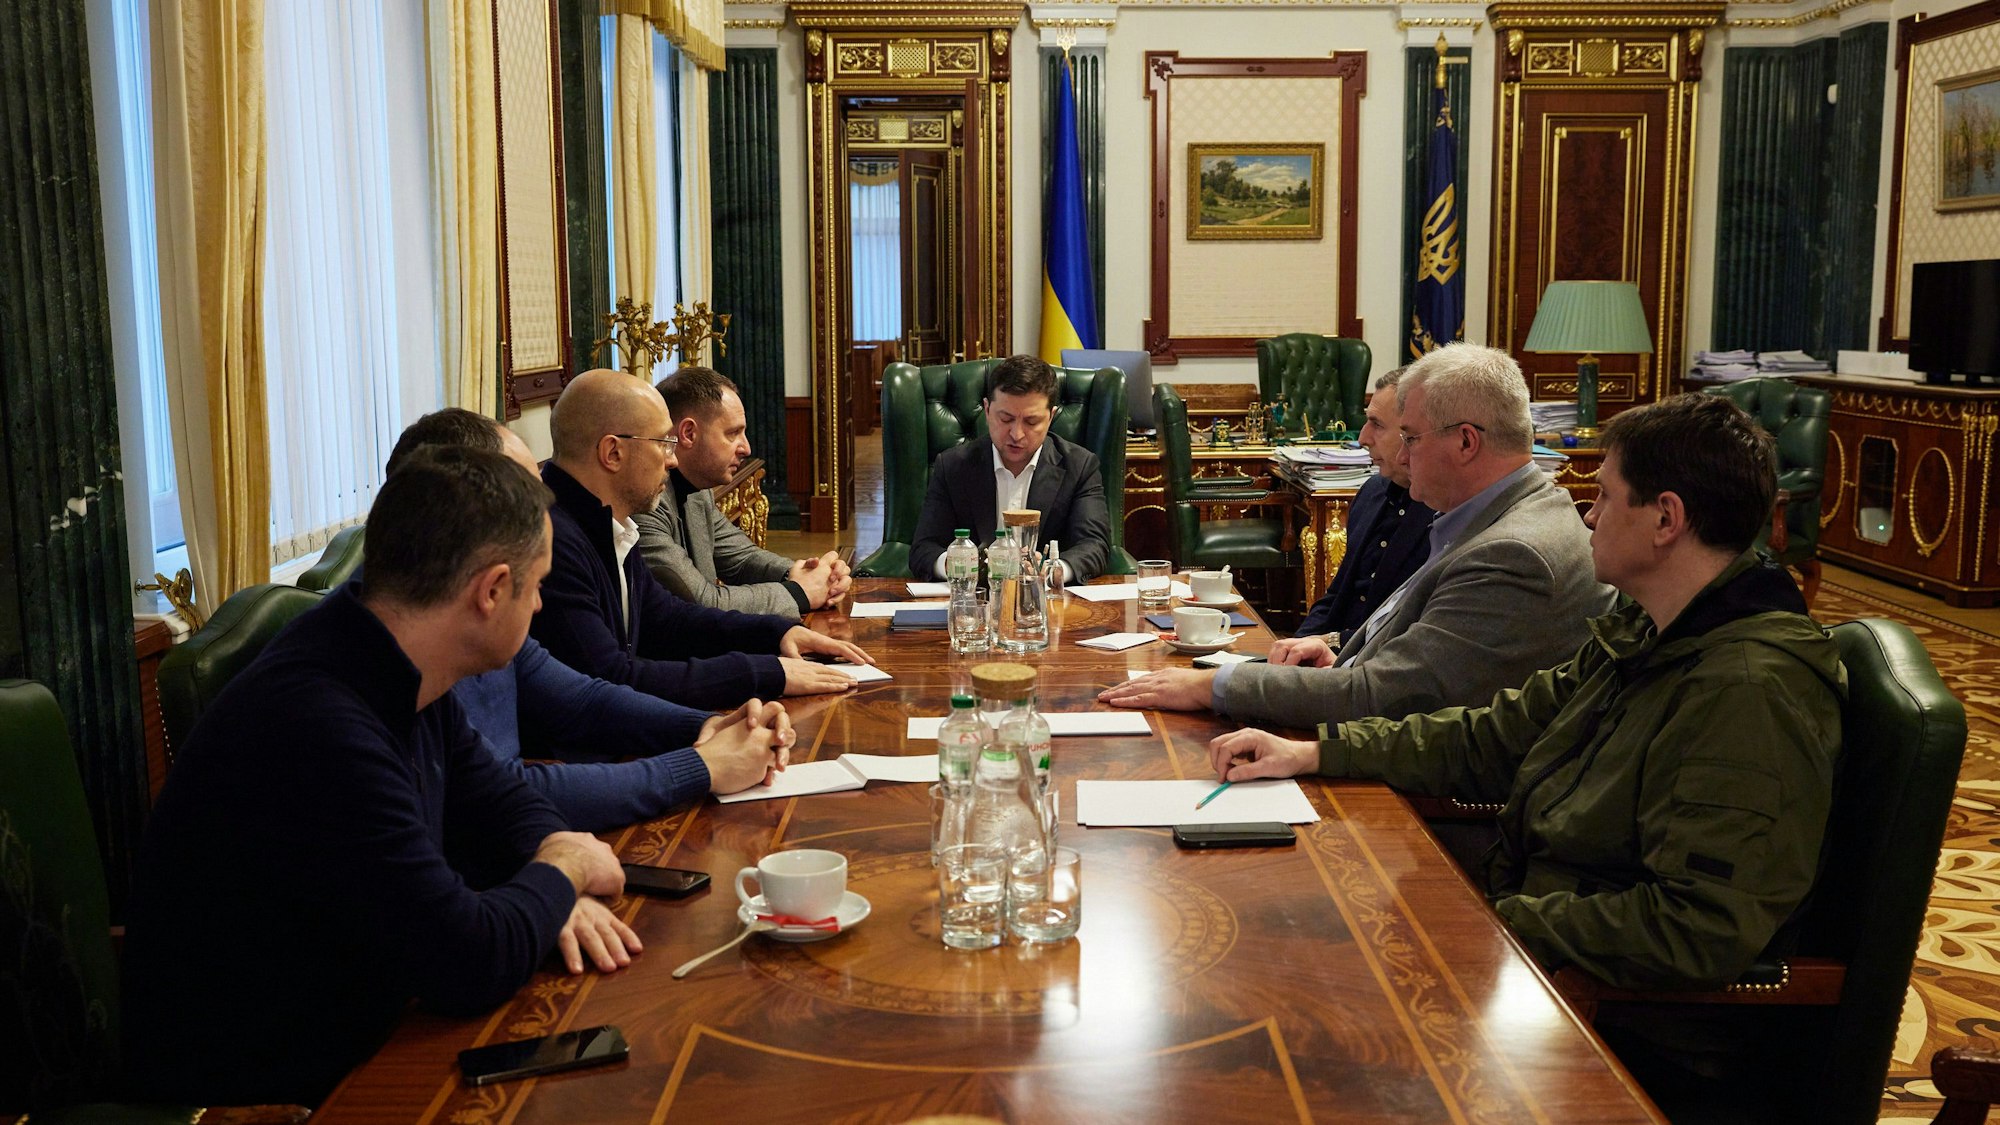 Der ukrainische Präsident Wolodymyr Selenskyj sitzt in der Mitte eines Tisches. Links und rechts von ihm sitzen sieben weitere Männer.